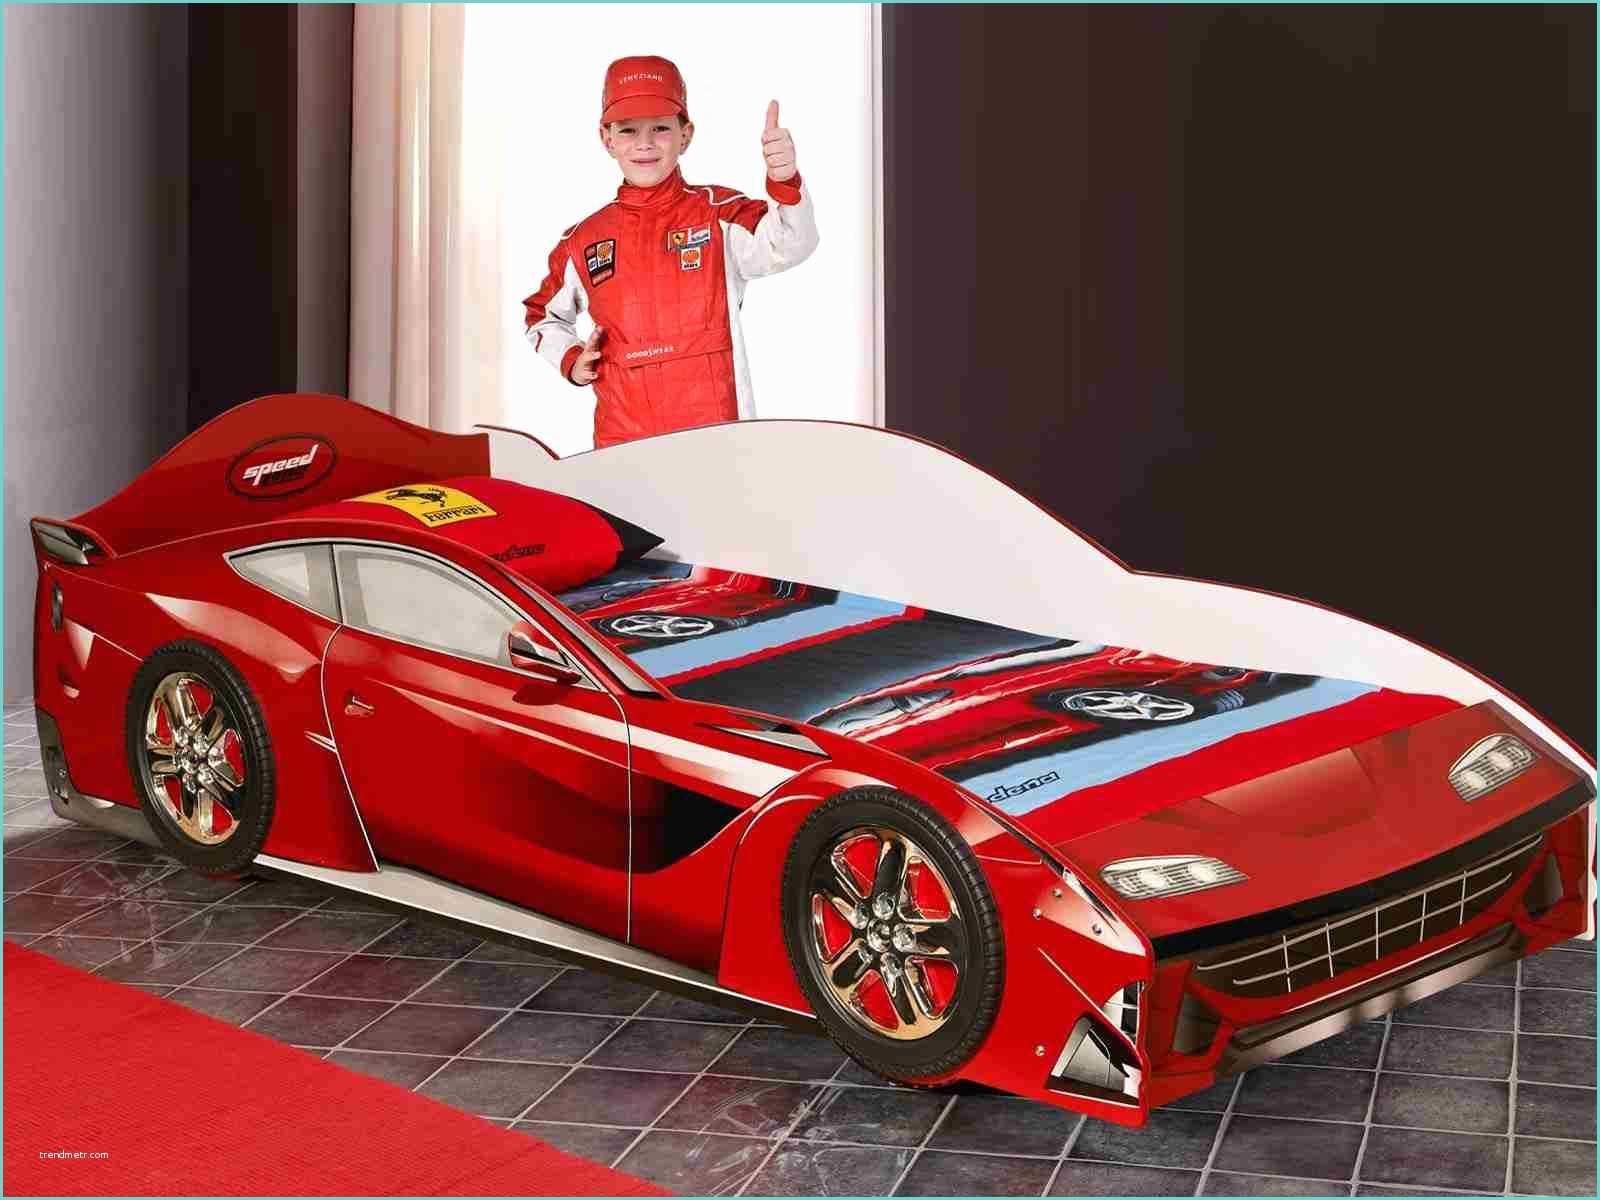 Lit Enfant Ferrari Lit Voiture Ferrari Interieur Maison Design Le Lit